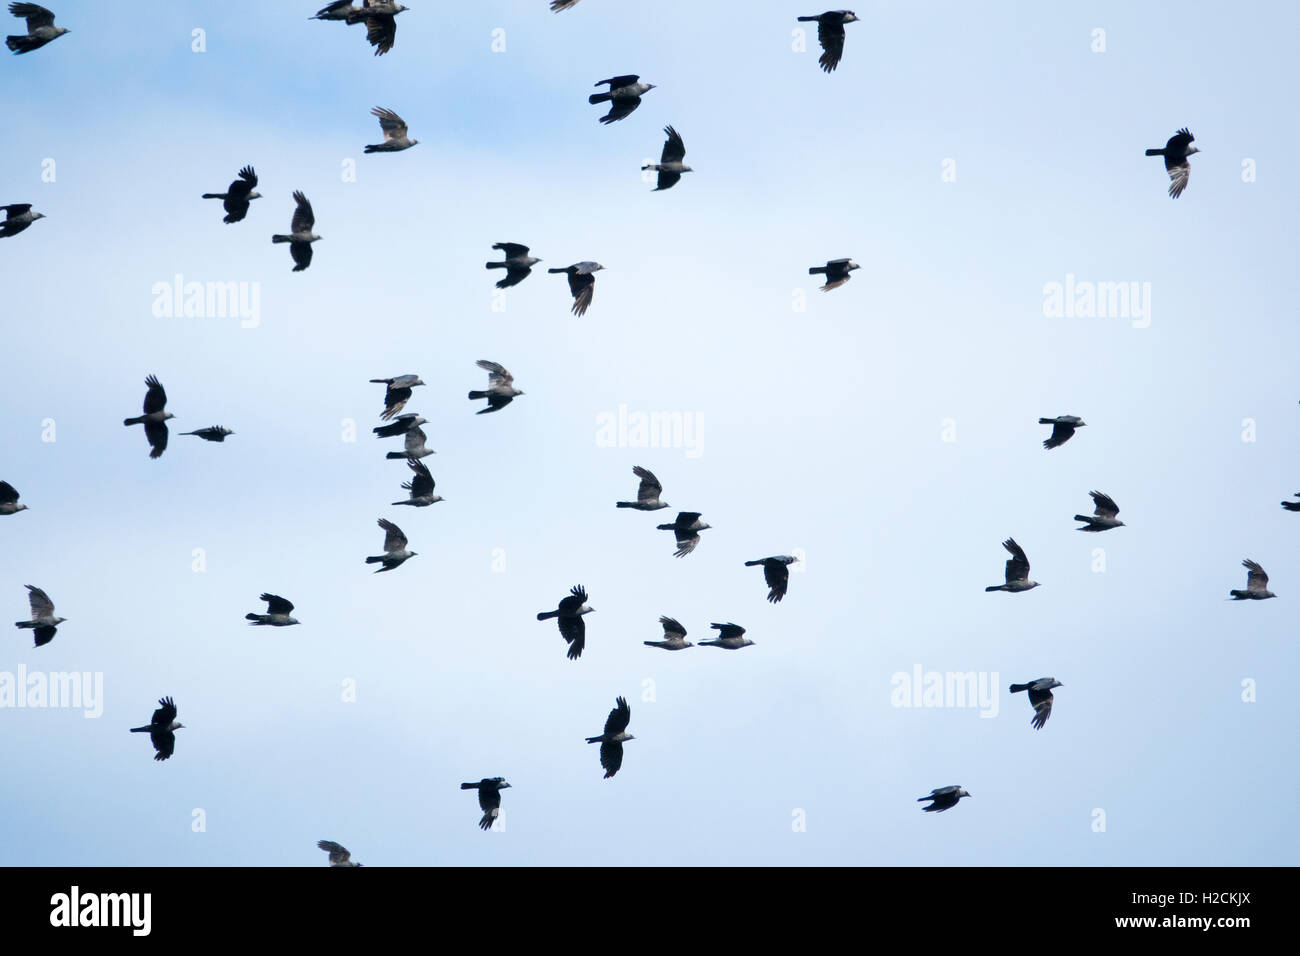 Bandada de pájaros volando en el cielo Foto de stock